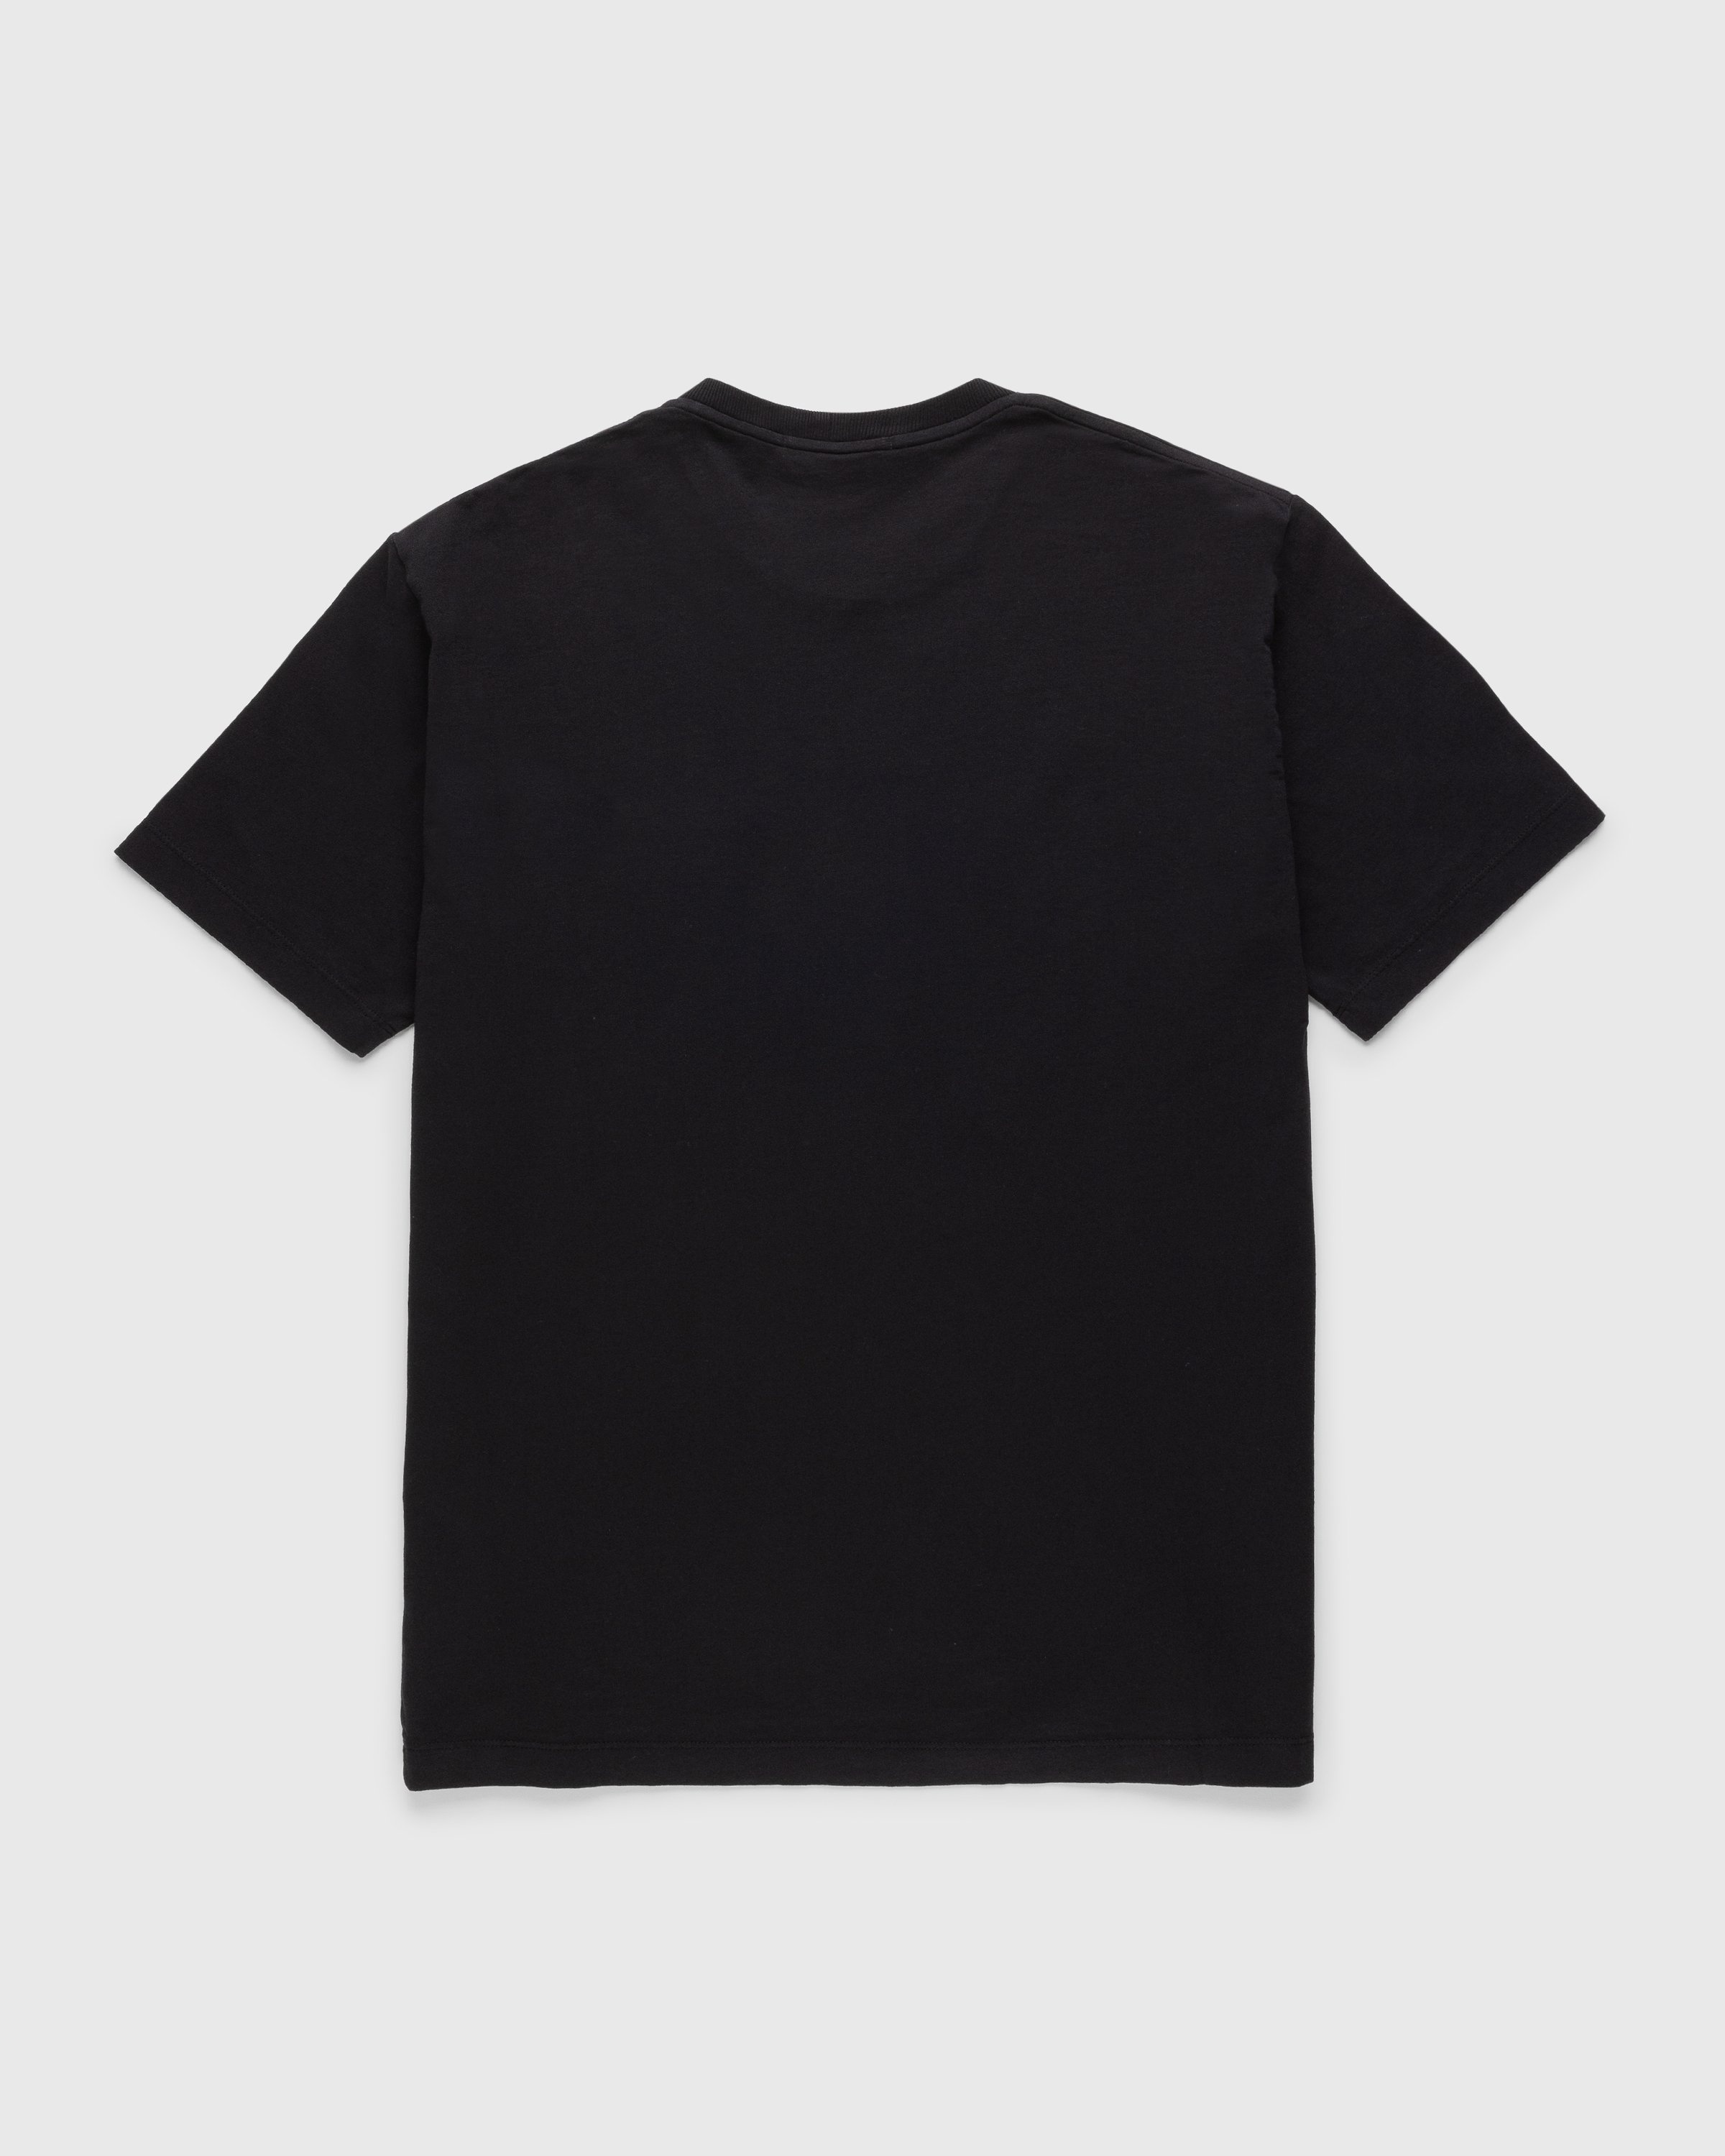 Eerlijk kooi voorbeeld Stone Island – Compass Logo T-Shirt Black | Highsnobiety Shop